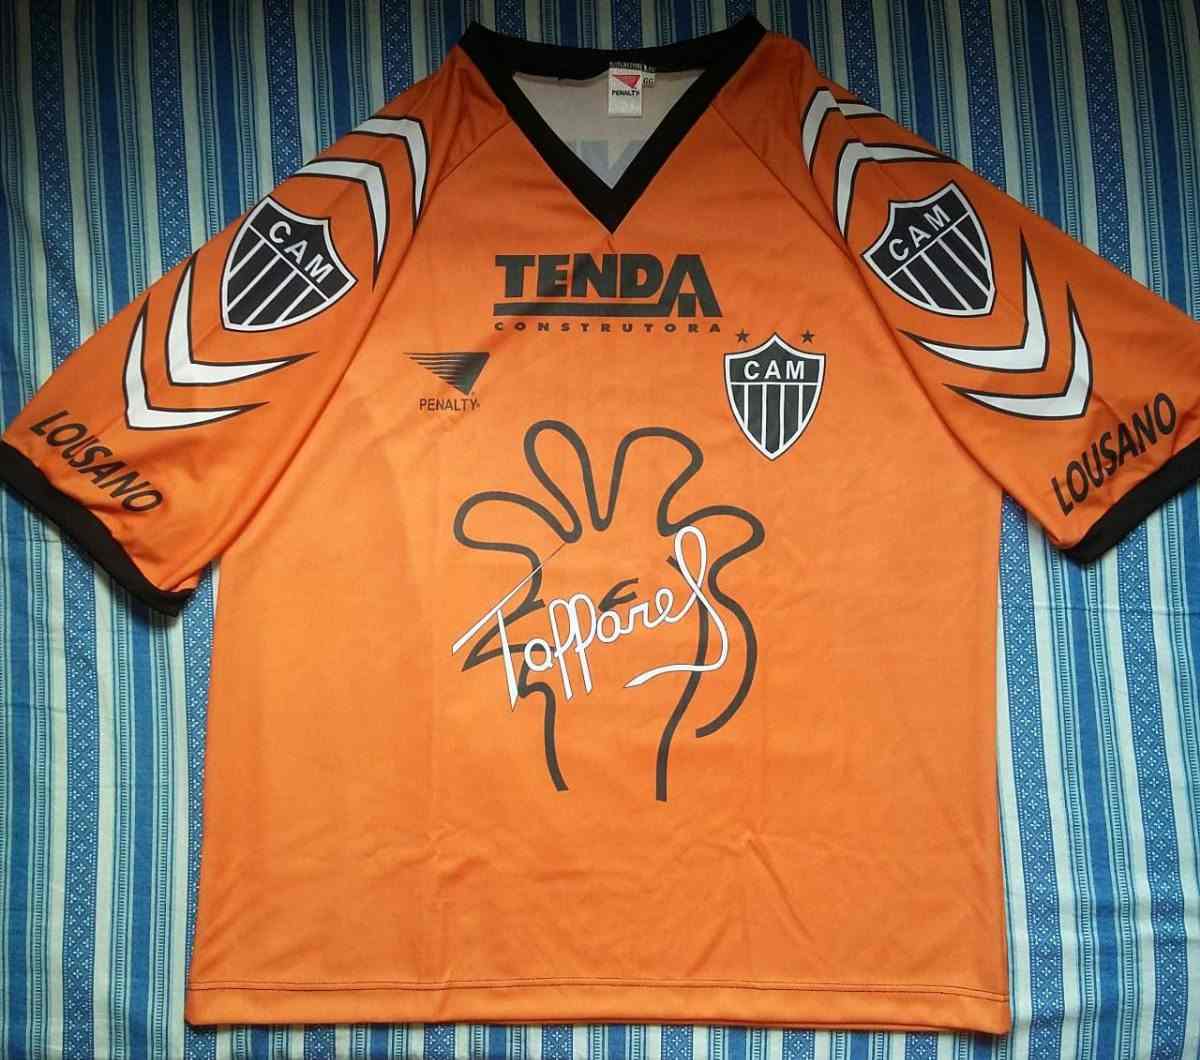 Muitos acreditam que essa camisa laranja que ele usou no Atlético MG em 1997 é a mais bonita. De cor laranja, ela traz o símbolo do mascote do clube, além da assinatura do goleiro. 